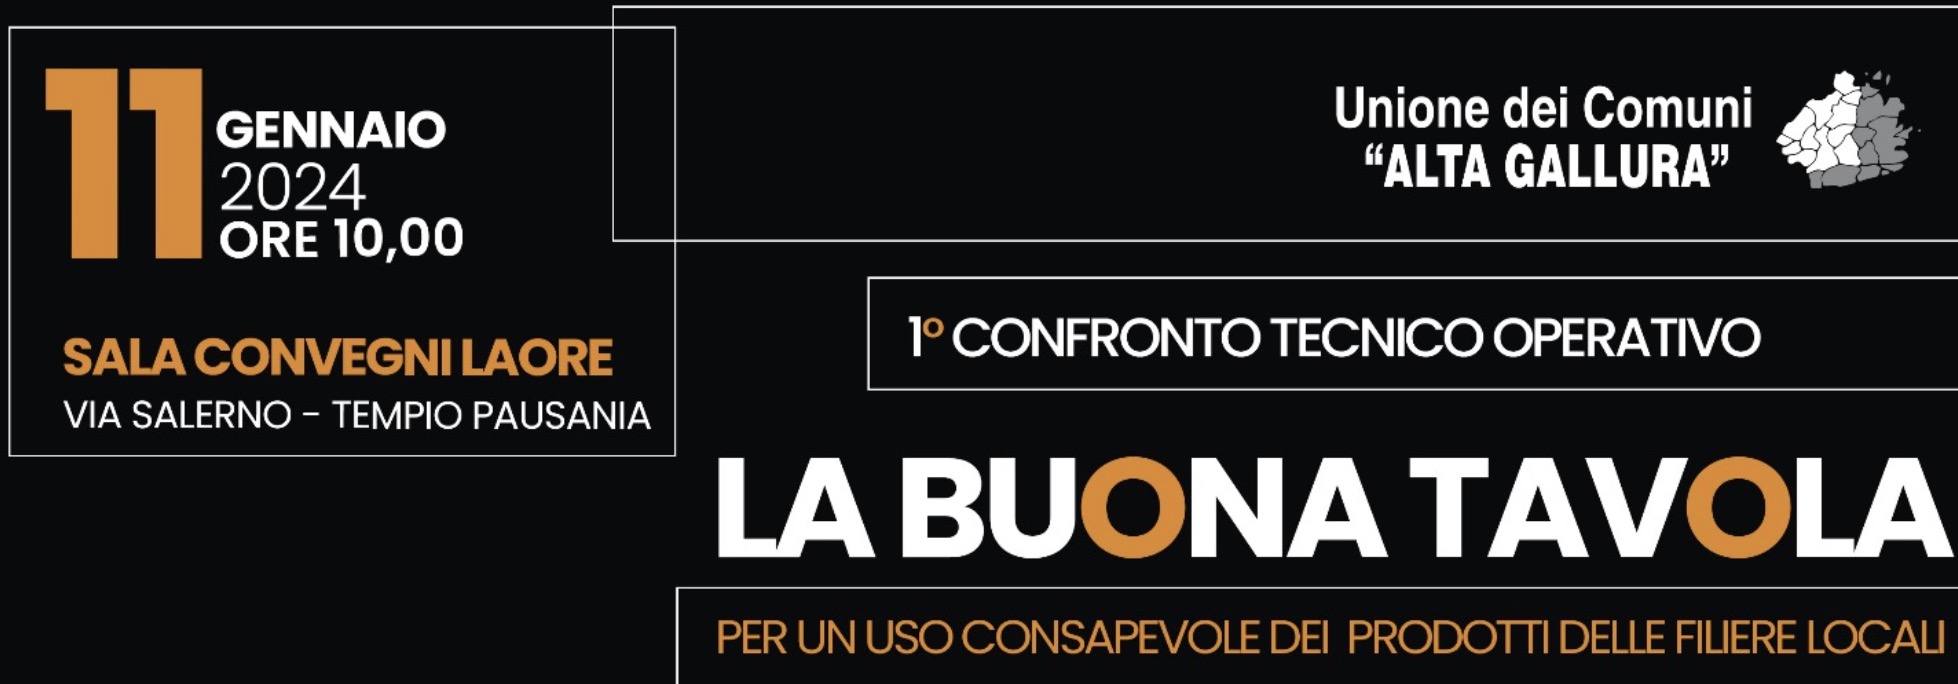 La Buona Tavola – Technical discussion in the Cagliari Food Hub